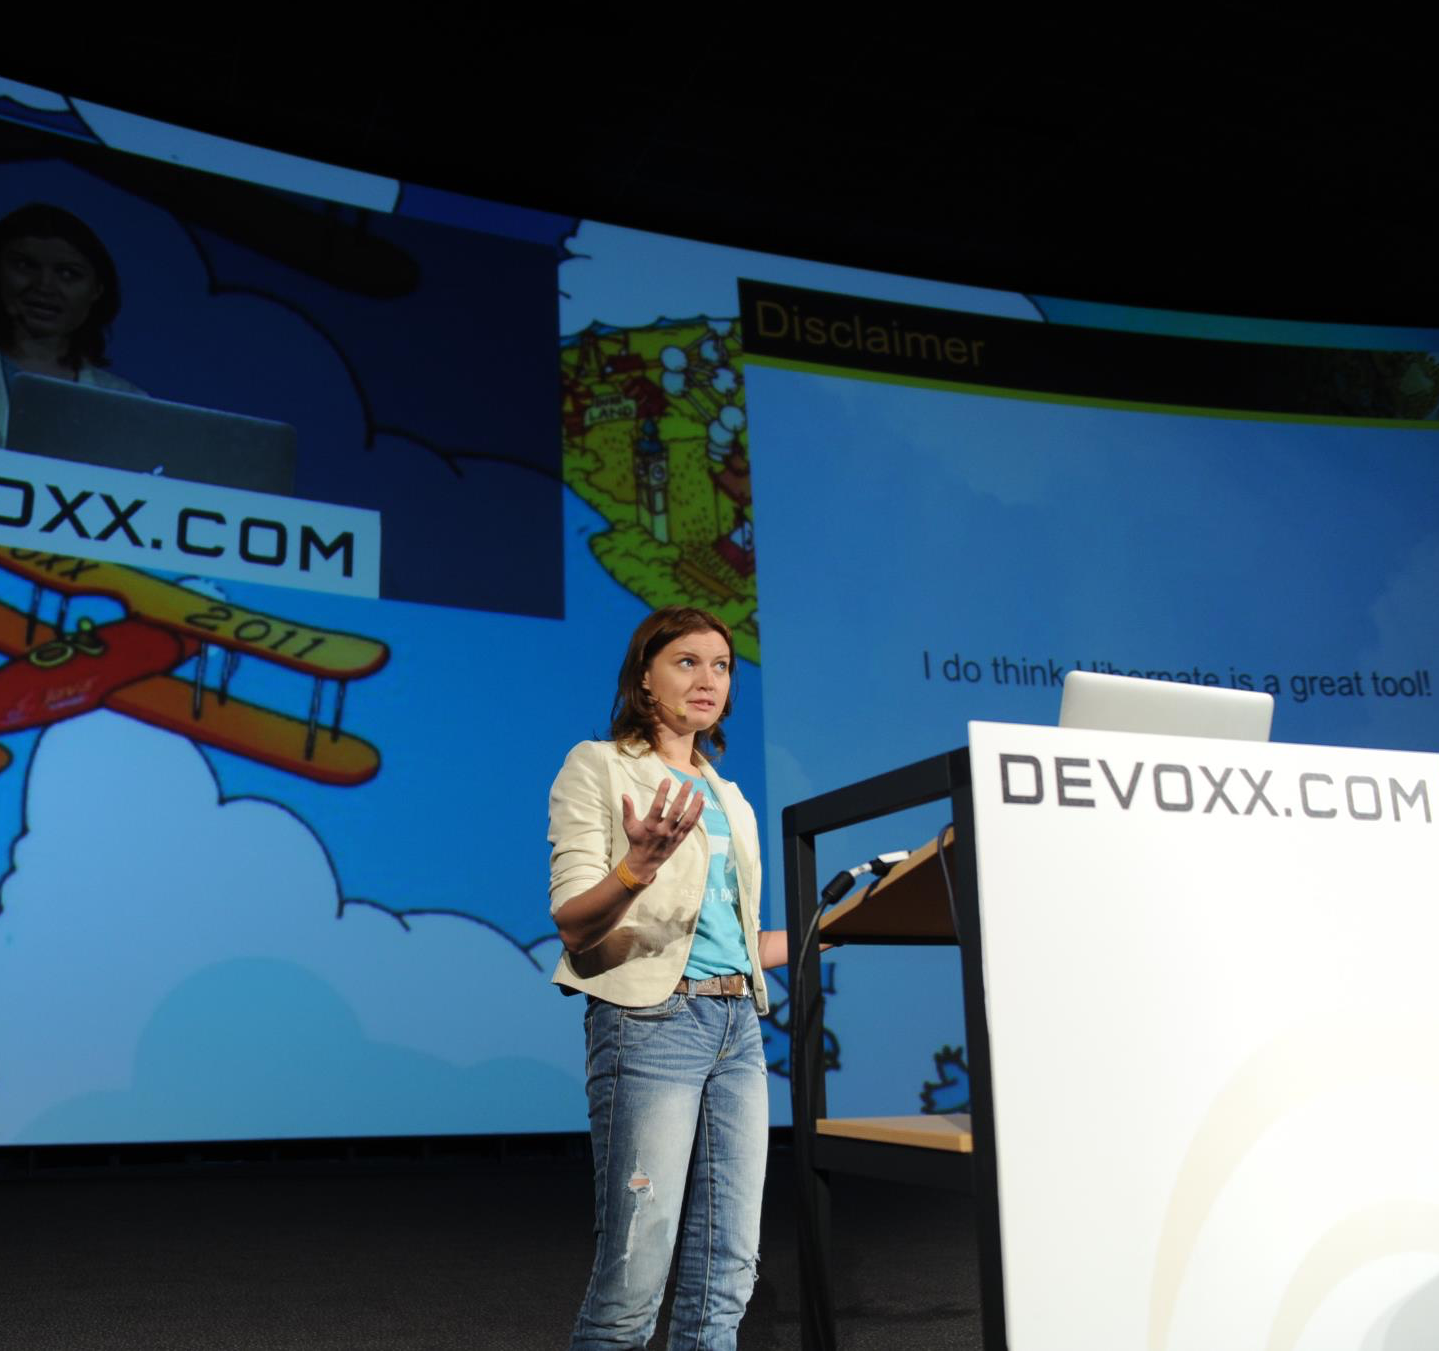 Devoxx Patrycja Wegrzynowicz